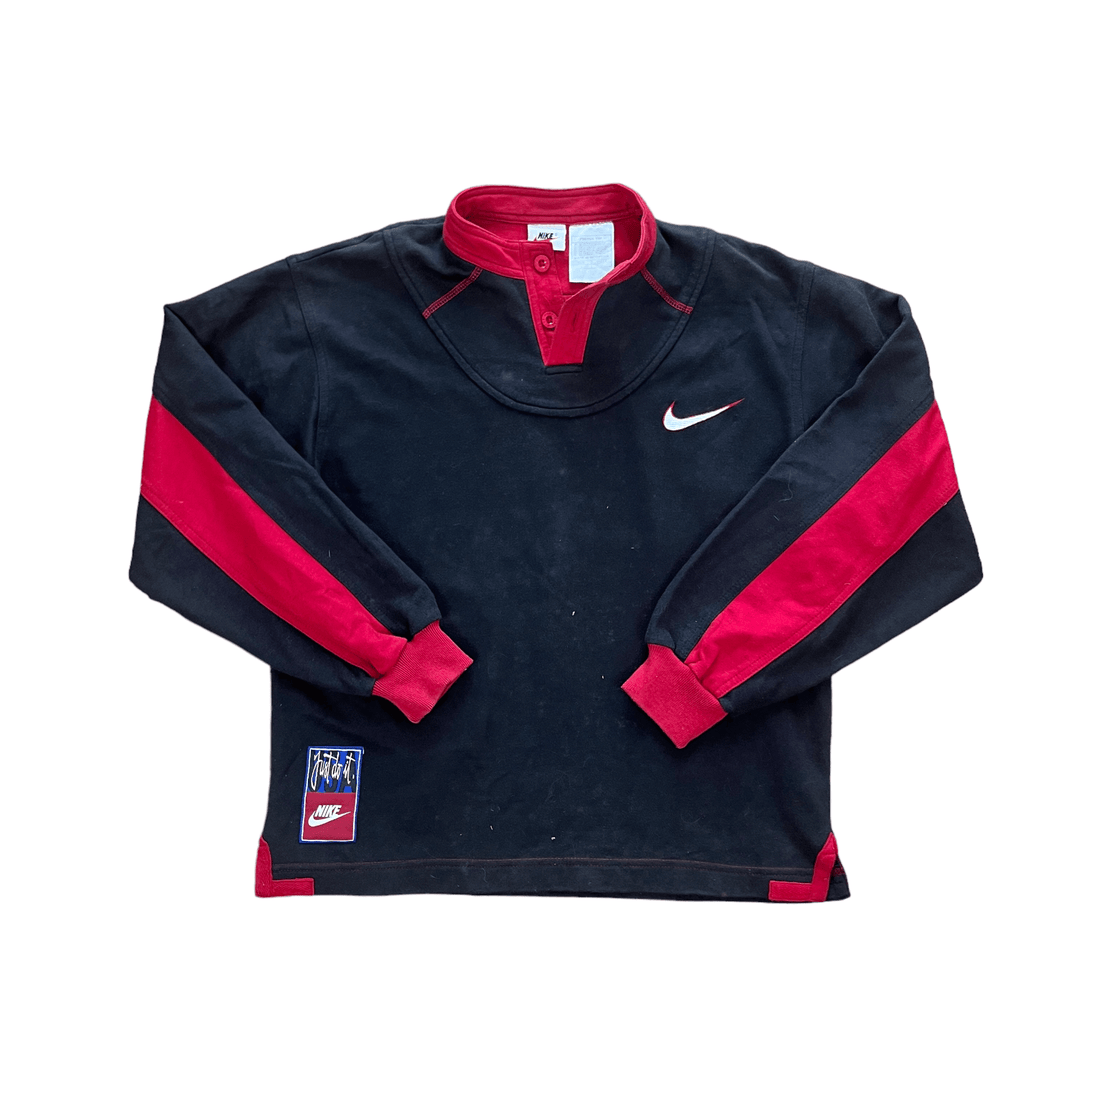 Women’s Vintage 90s Black + Red Nike Sweatshirt - Large - The Streetwear Studio